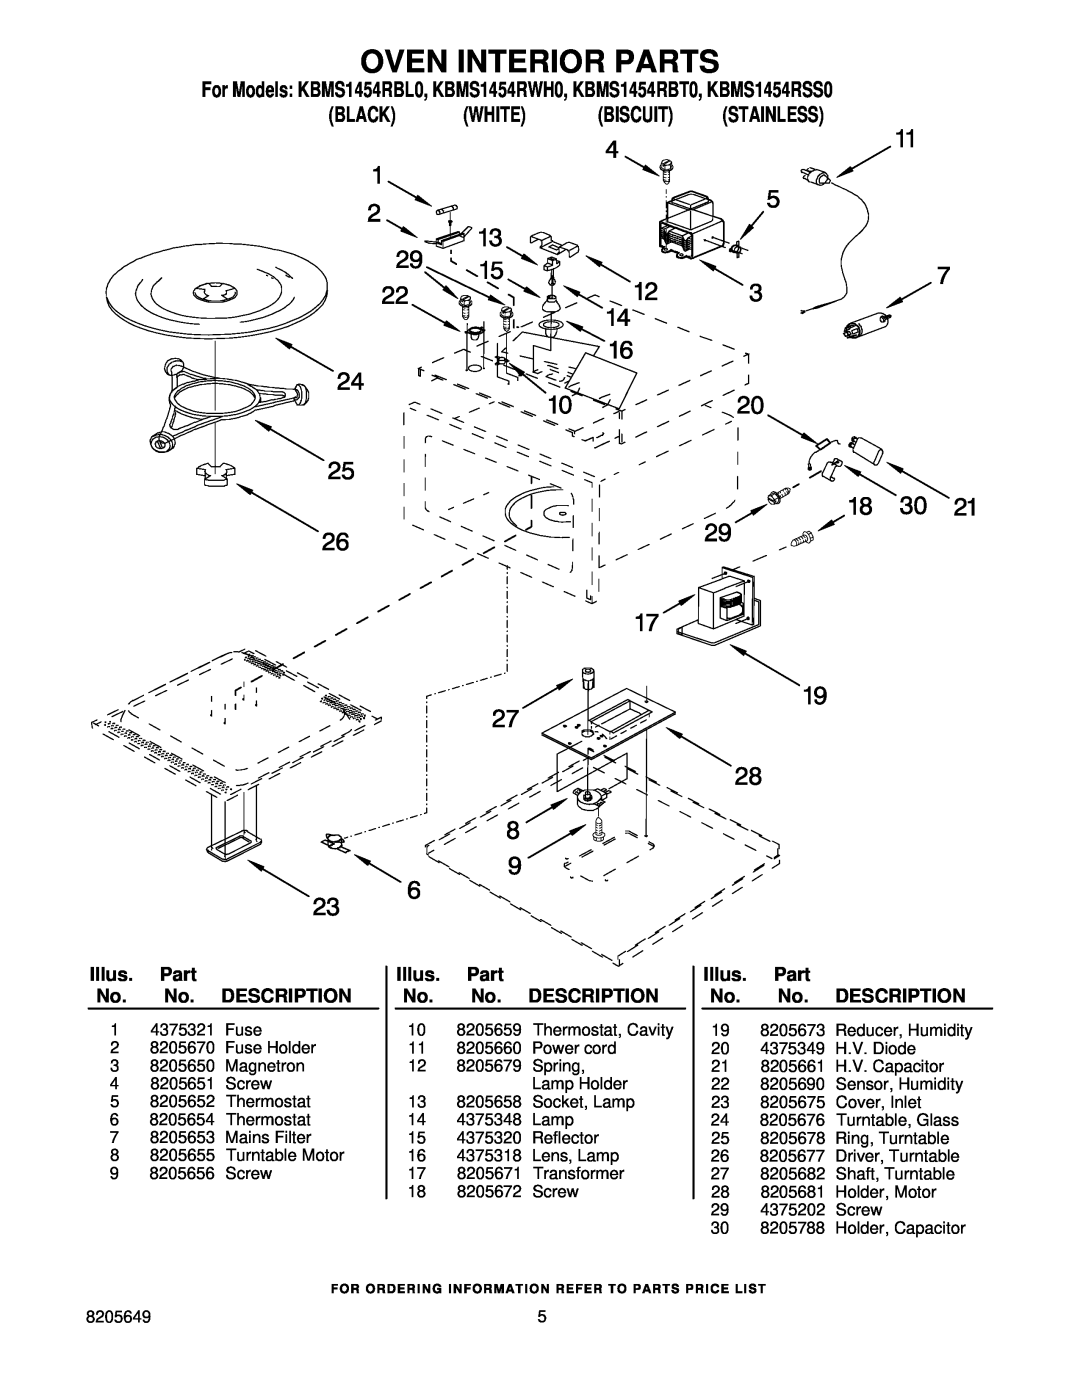 KitchenAid Oven Interior Parts, For Models KBMS1454RBL0, KBMS1454RWH0, KBMS1454RBT0, KBMS1454RSS0 